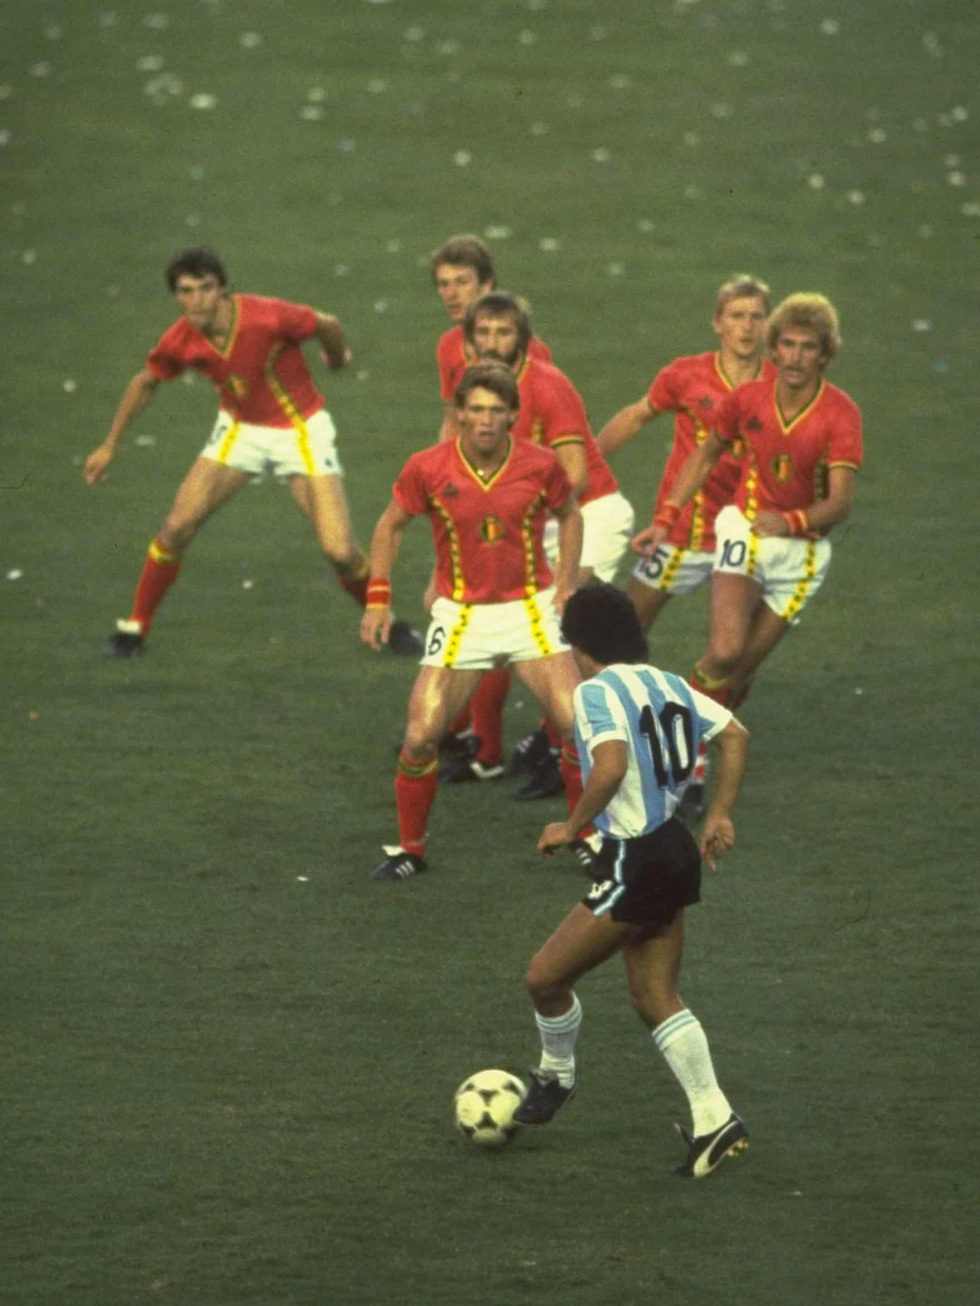 Lần đầu tiên mà Maradona góp mặt tại một kỳ World Cup là vào năm 1982. Ngay lập tức, ông đã được trao chiếc áo số 10 khi chỉ mới 21 tuổi - Ảnh: AFP